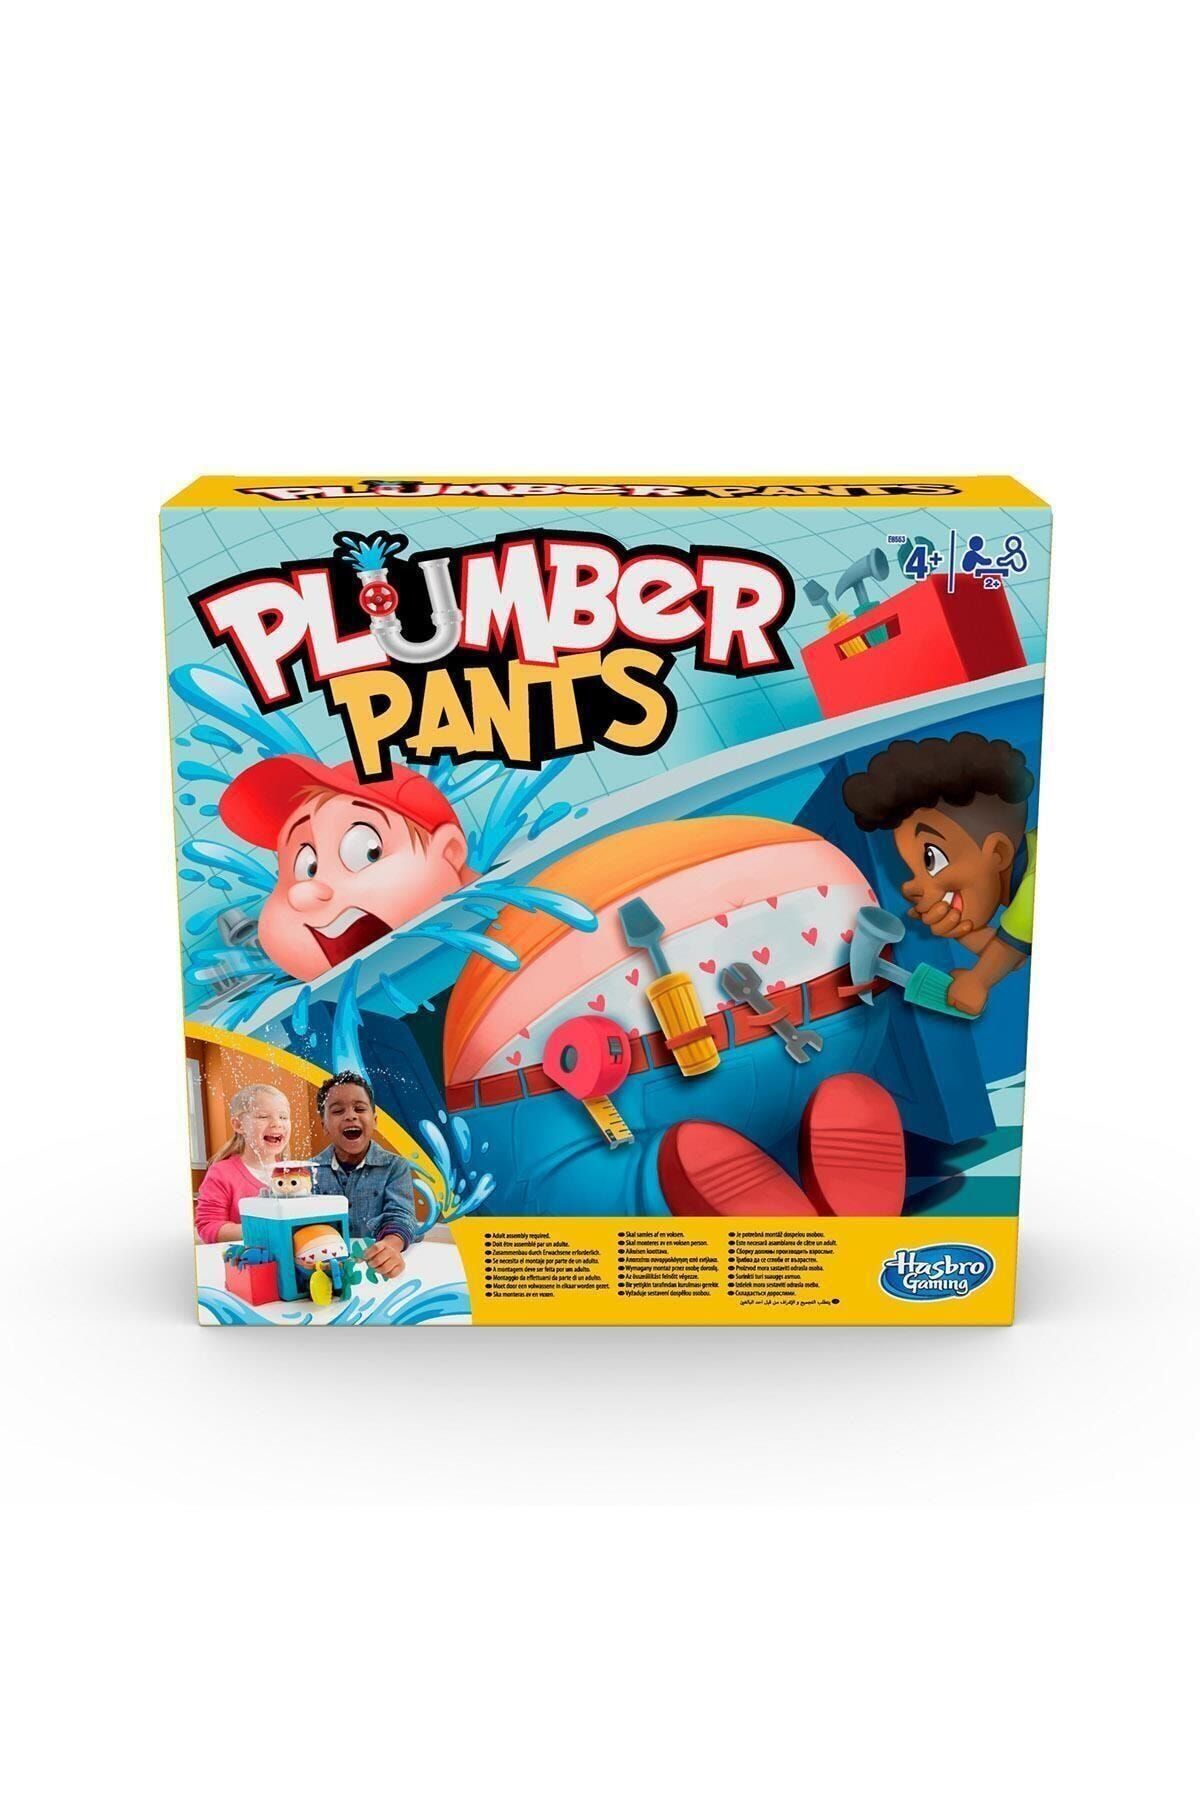 Hasbro Plumber Pants E6553